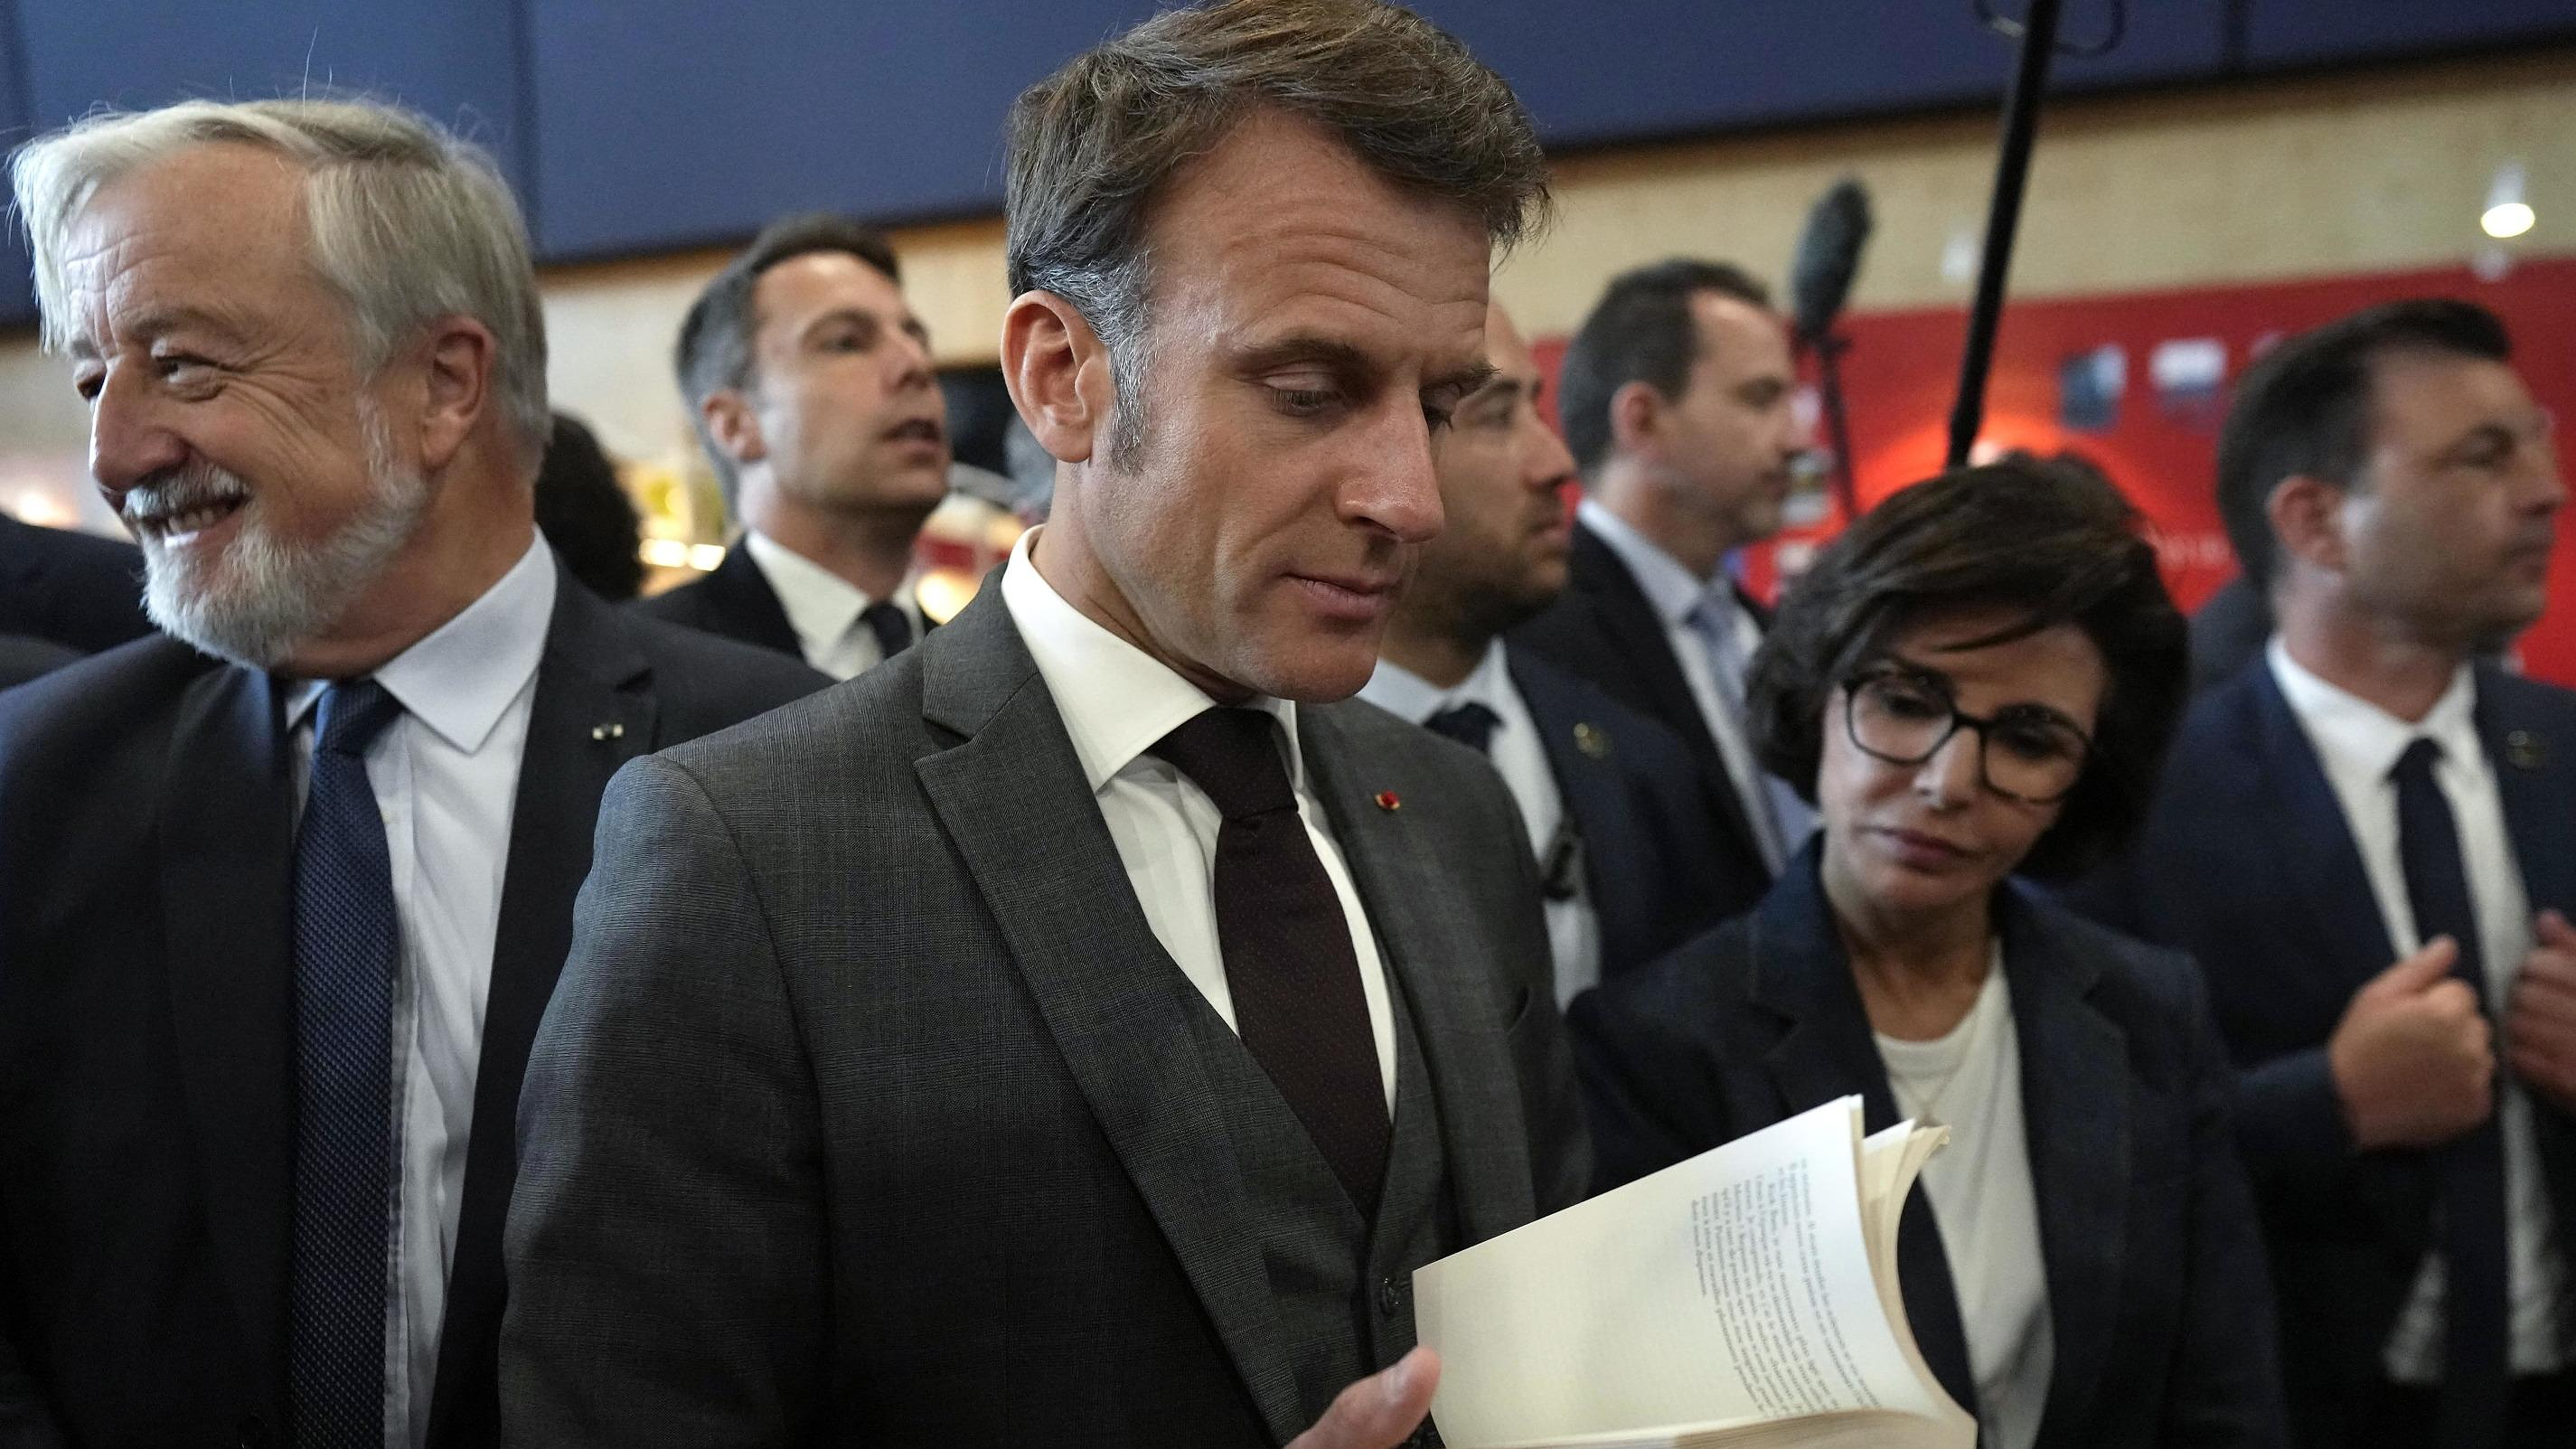 Emmanuel Macron improvises a visit to the Paris Book Festival